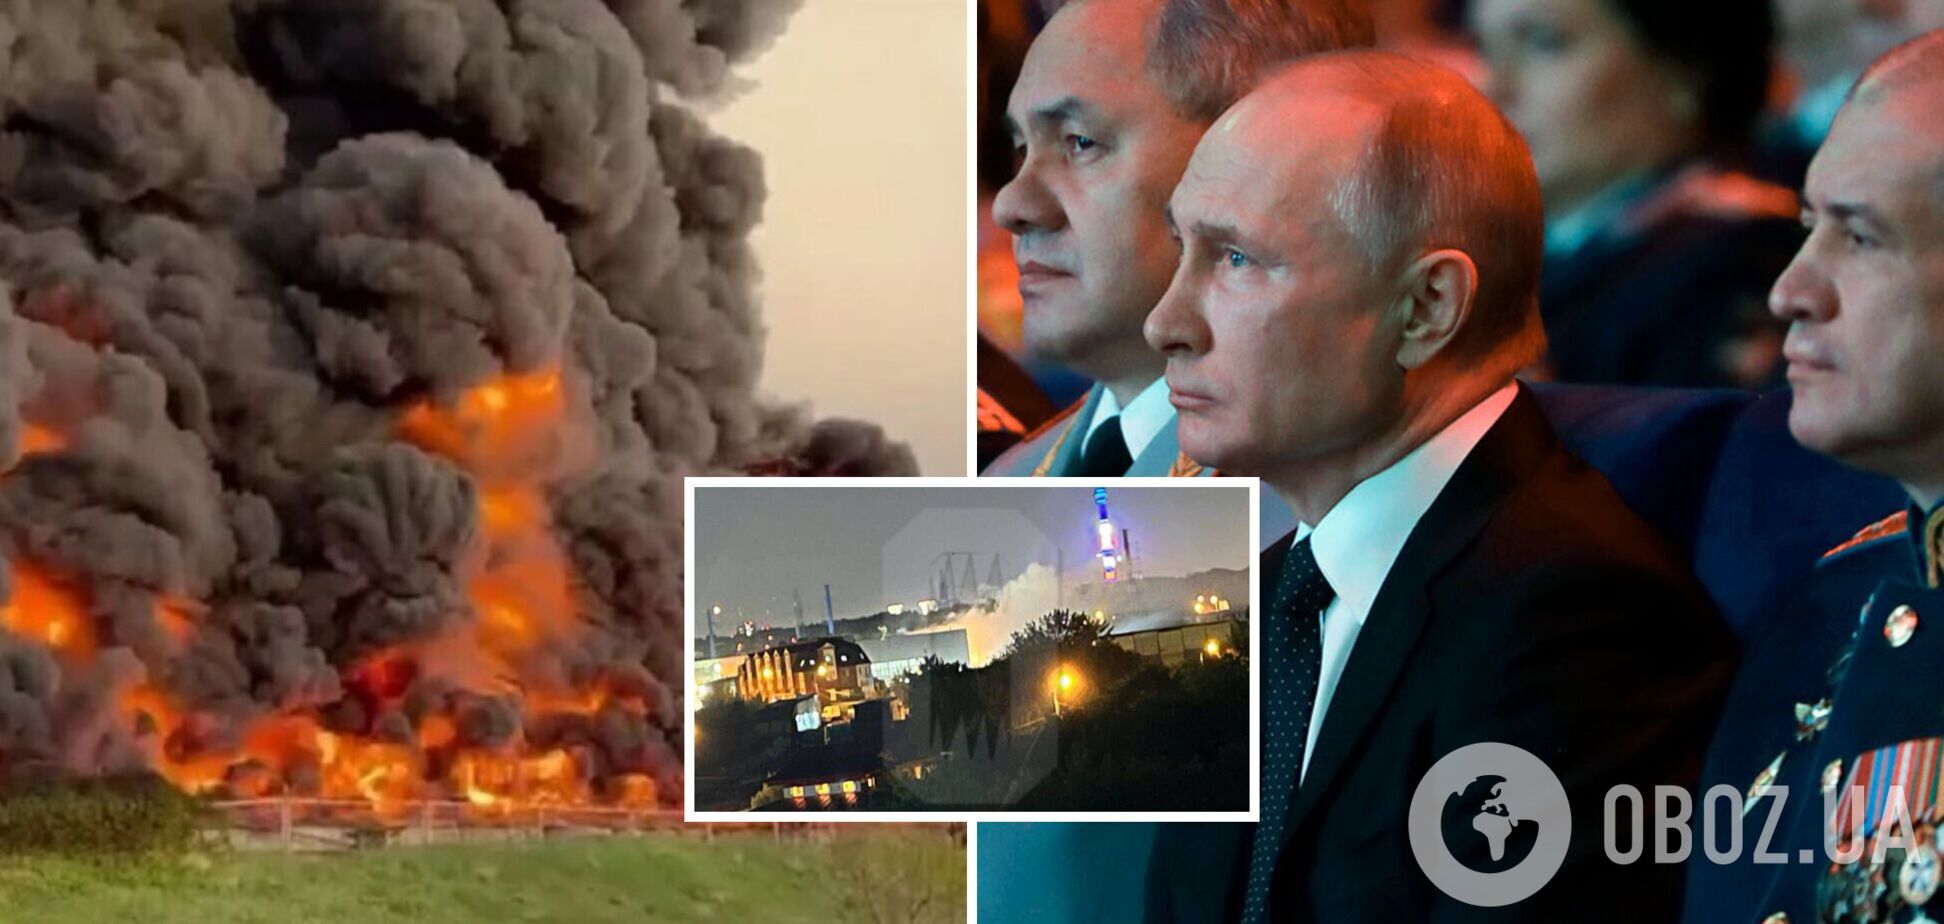 Атаки на Москву оттягивают ПВО врага от фронта. Будет ли атака на Путина? Интервью с Мельником